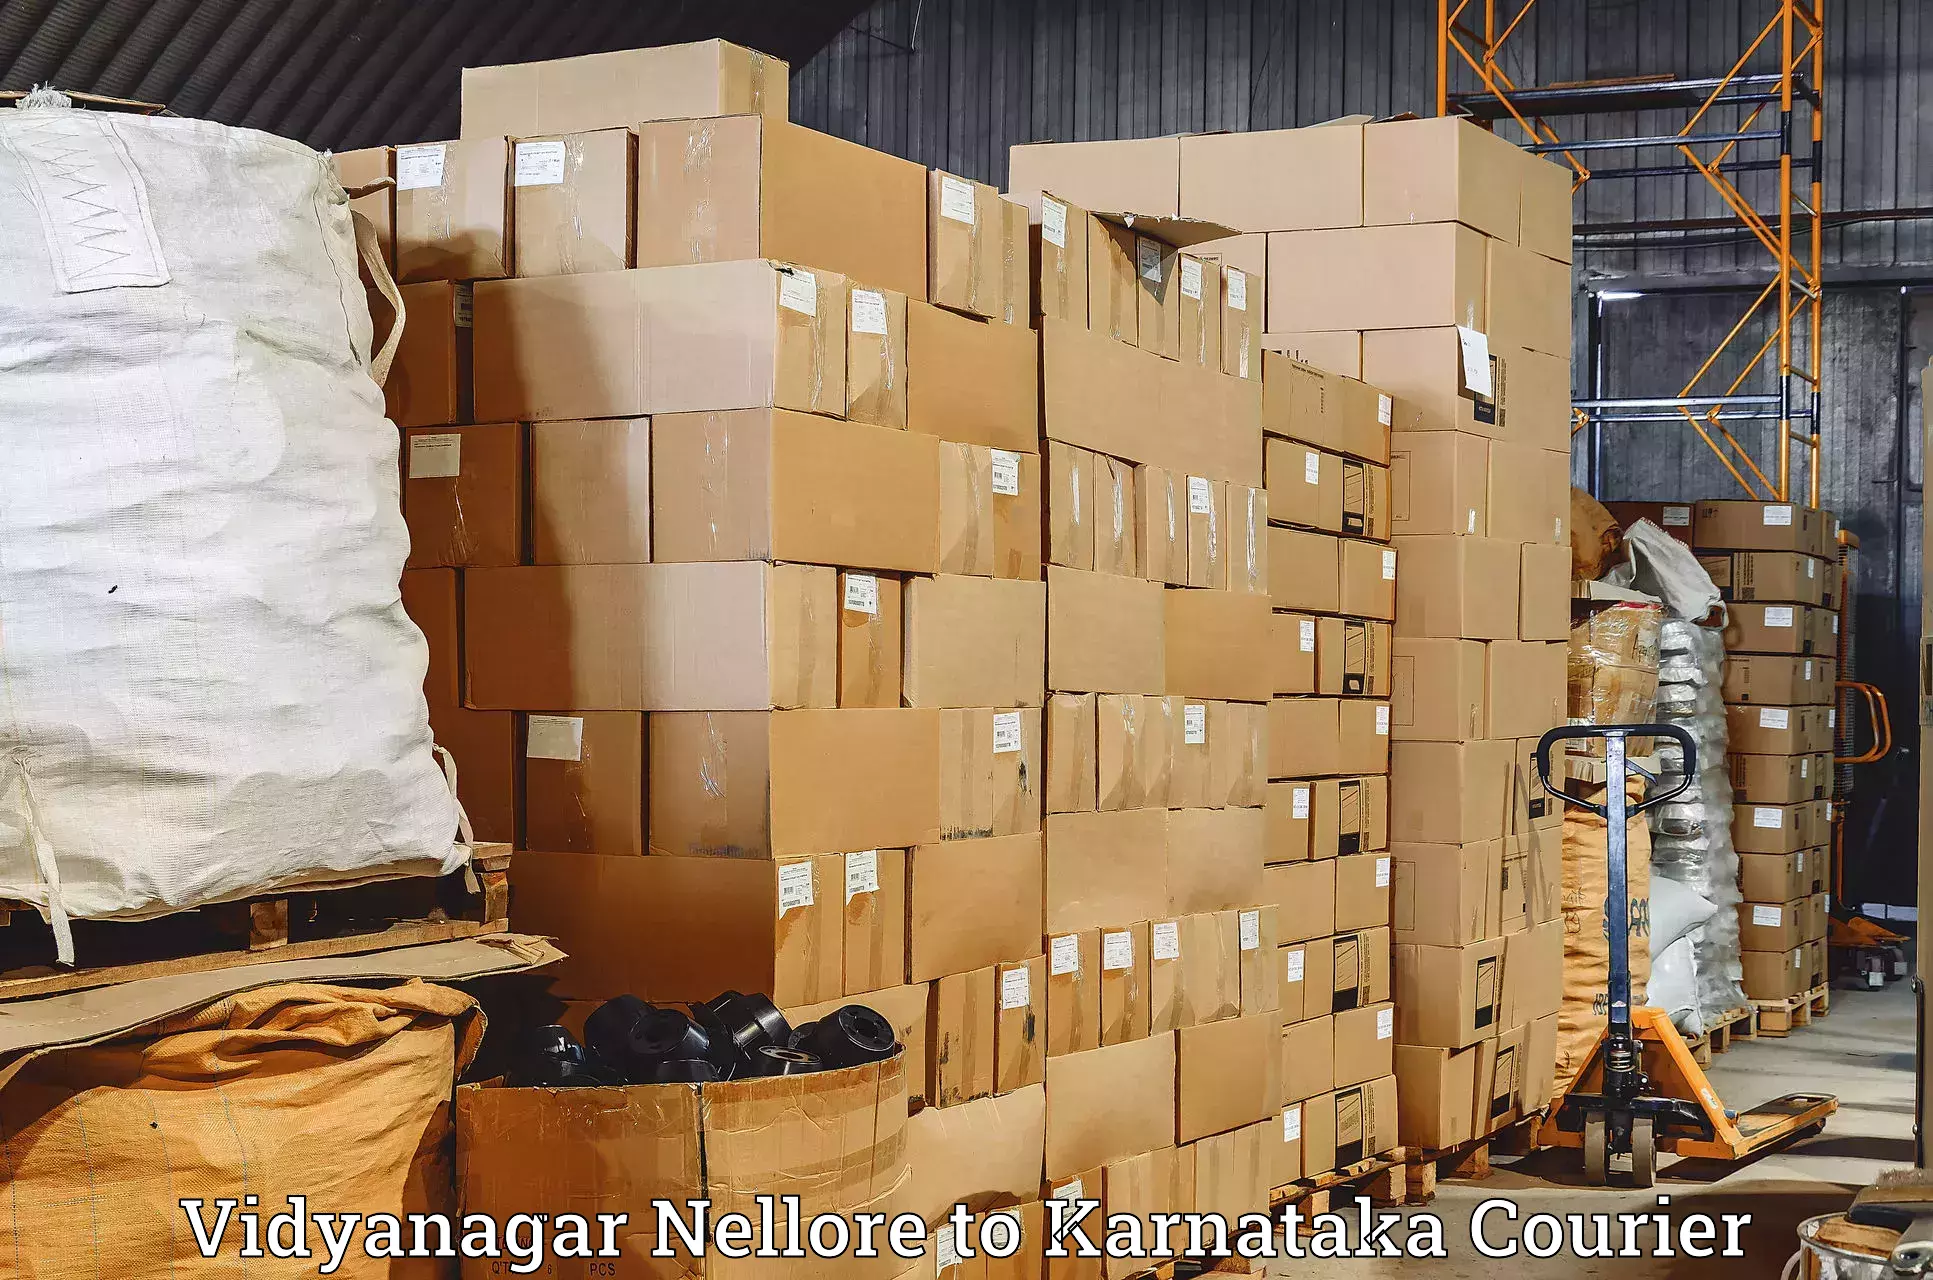 Professional courier handling Vidyanagar Nellore to Chamarajanagar